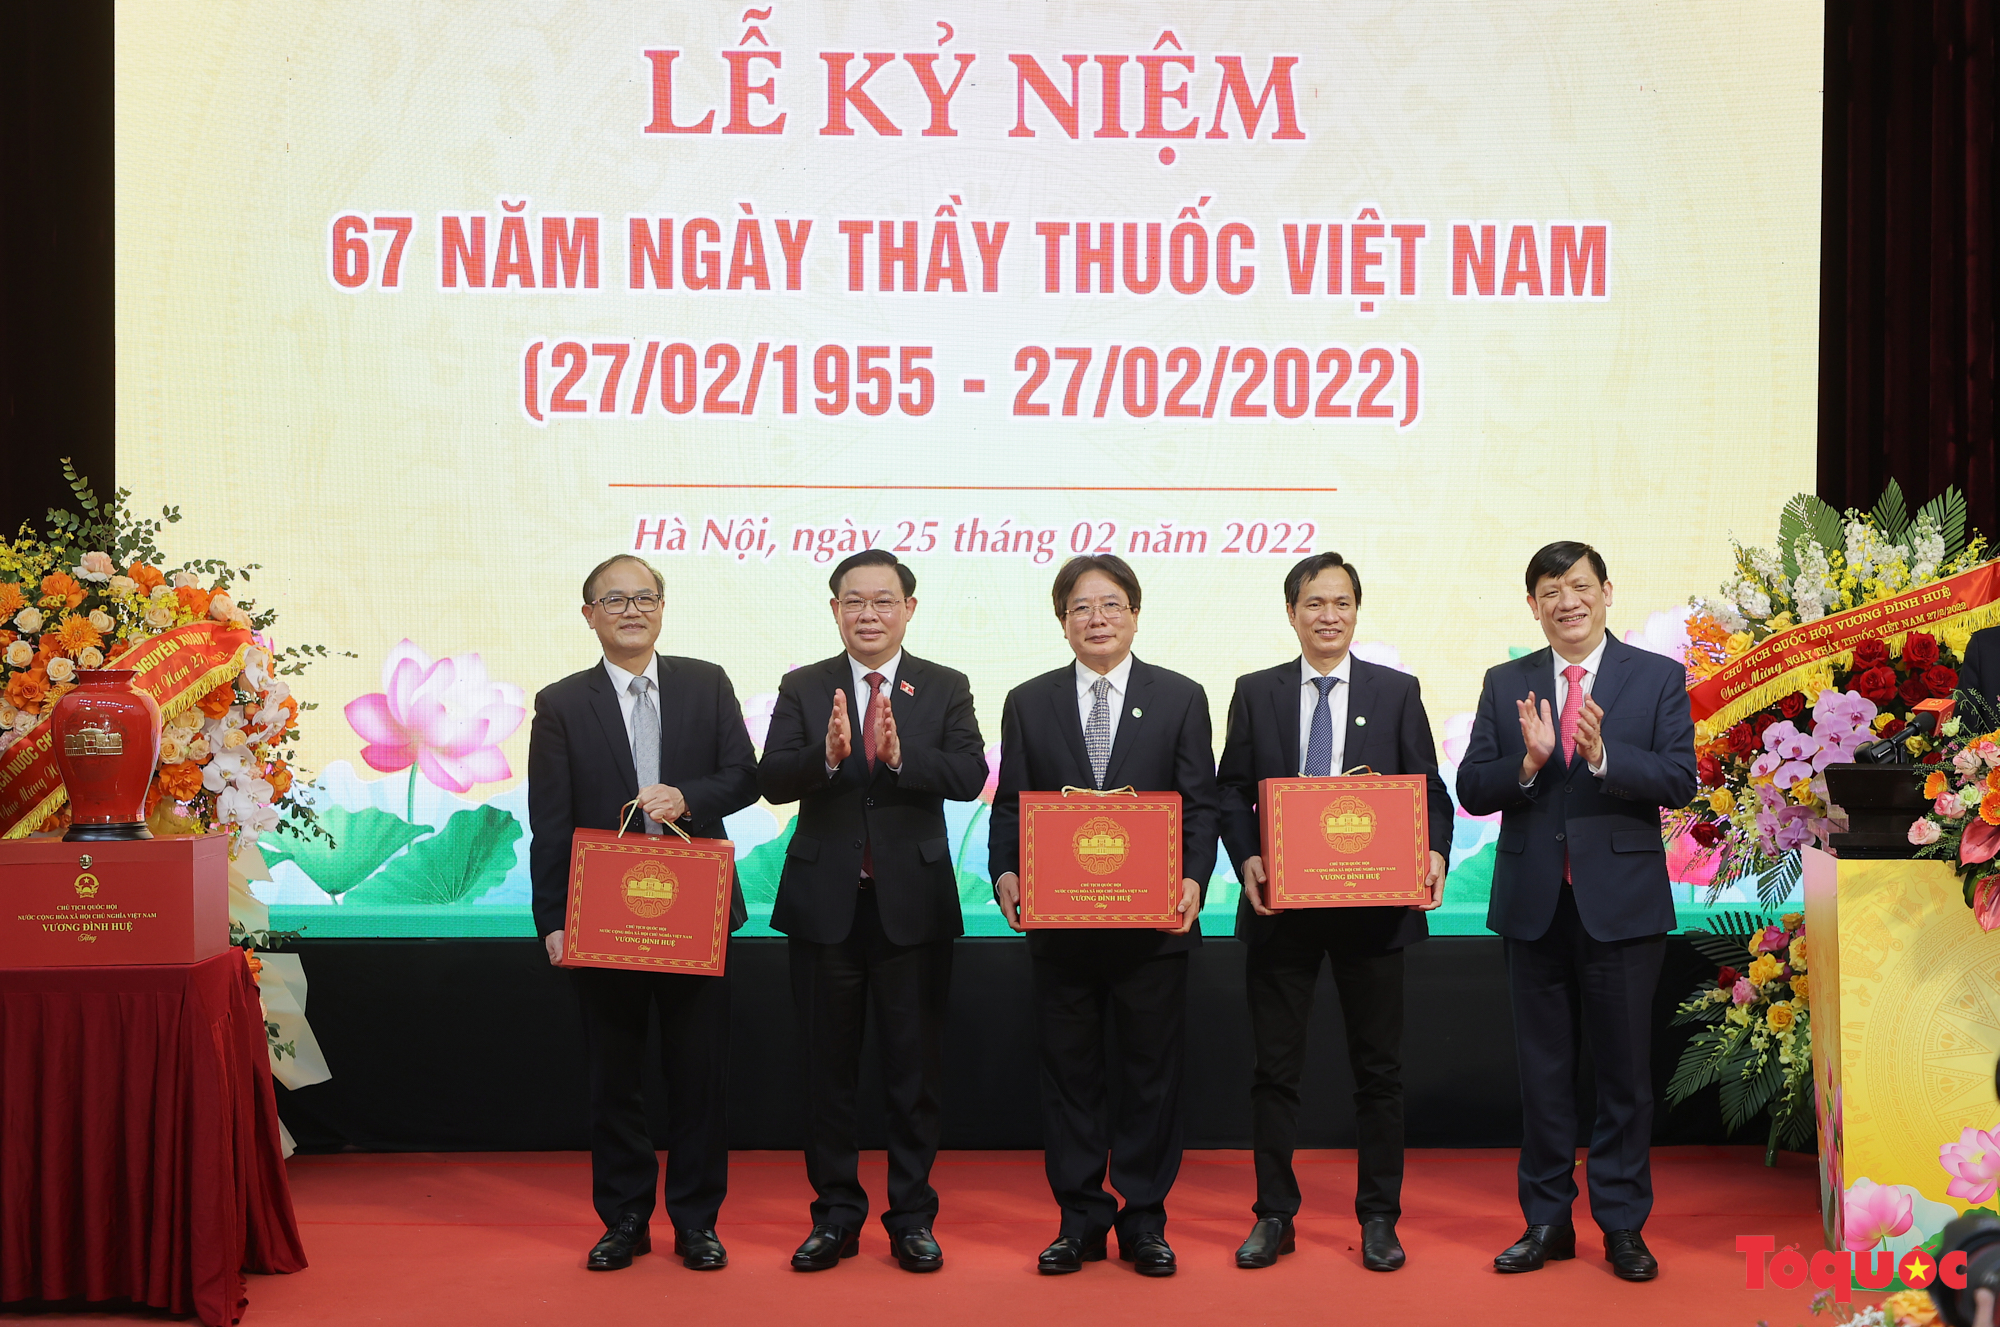 Chủ tịch Quốc hội Vương Đình Huệ thăm Bệnh viện Hữu nghị Việt Đức nhân ngày Thầy thuốc Việt Nam - Ảnh 12.